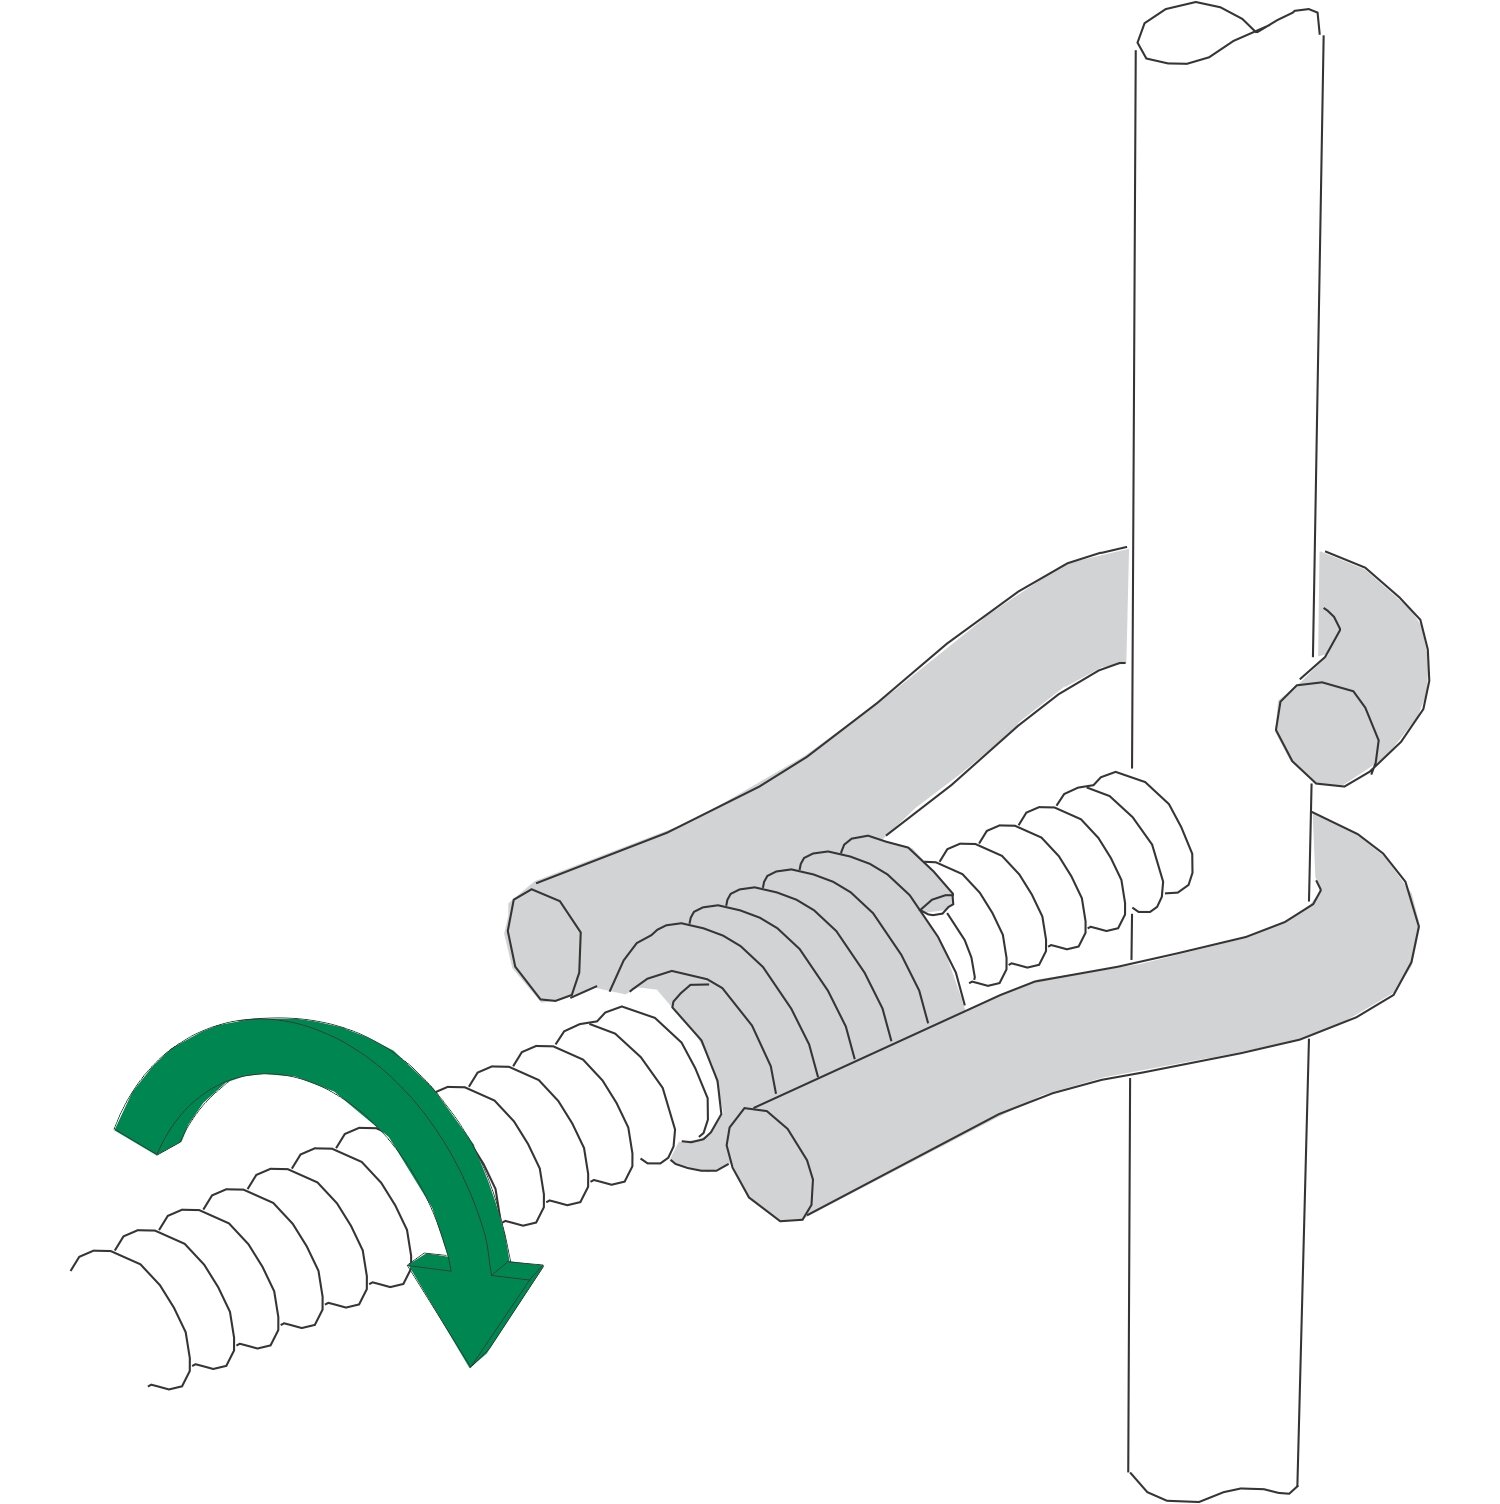 Steel Dog RH Rebar Hooks – Muller Construction Supply